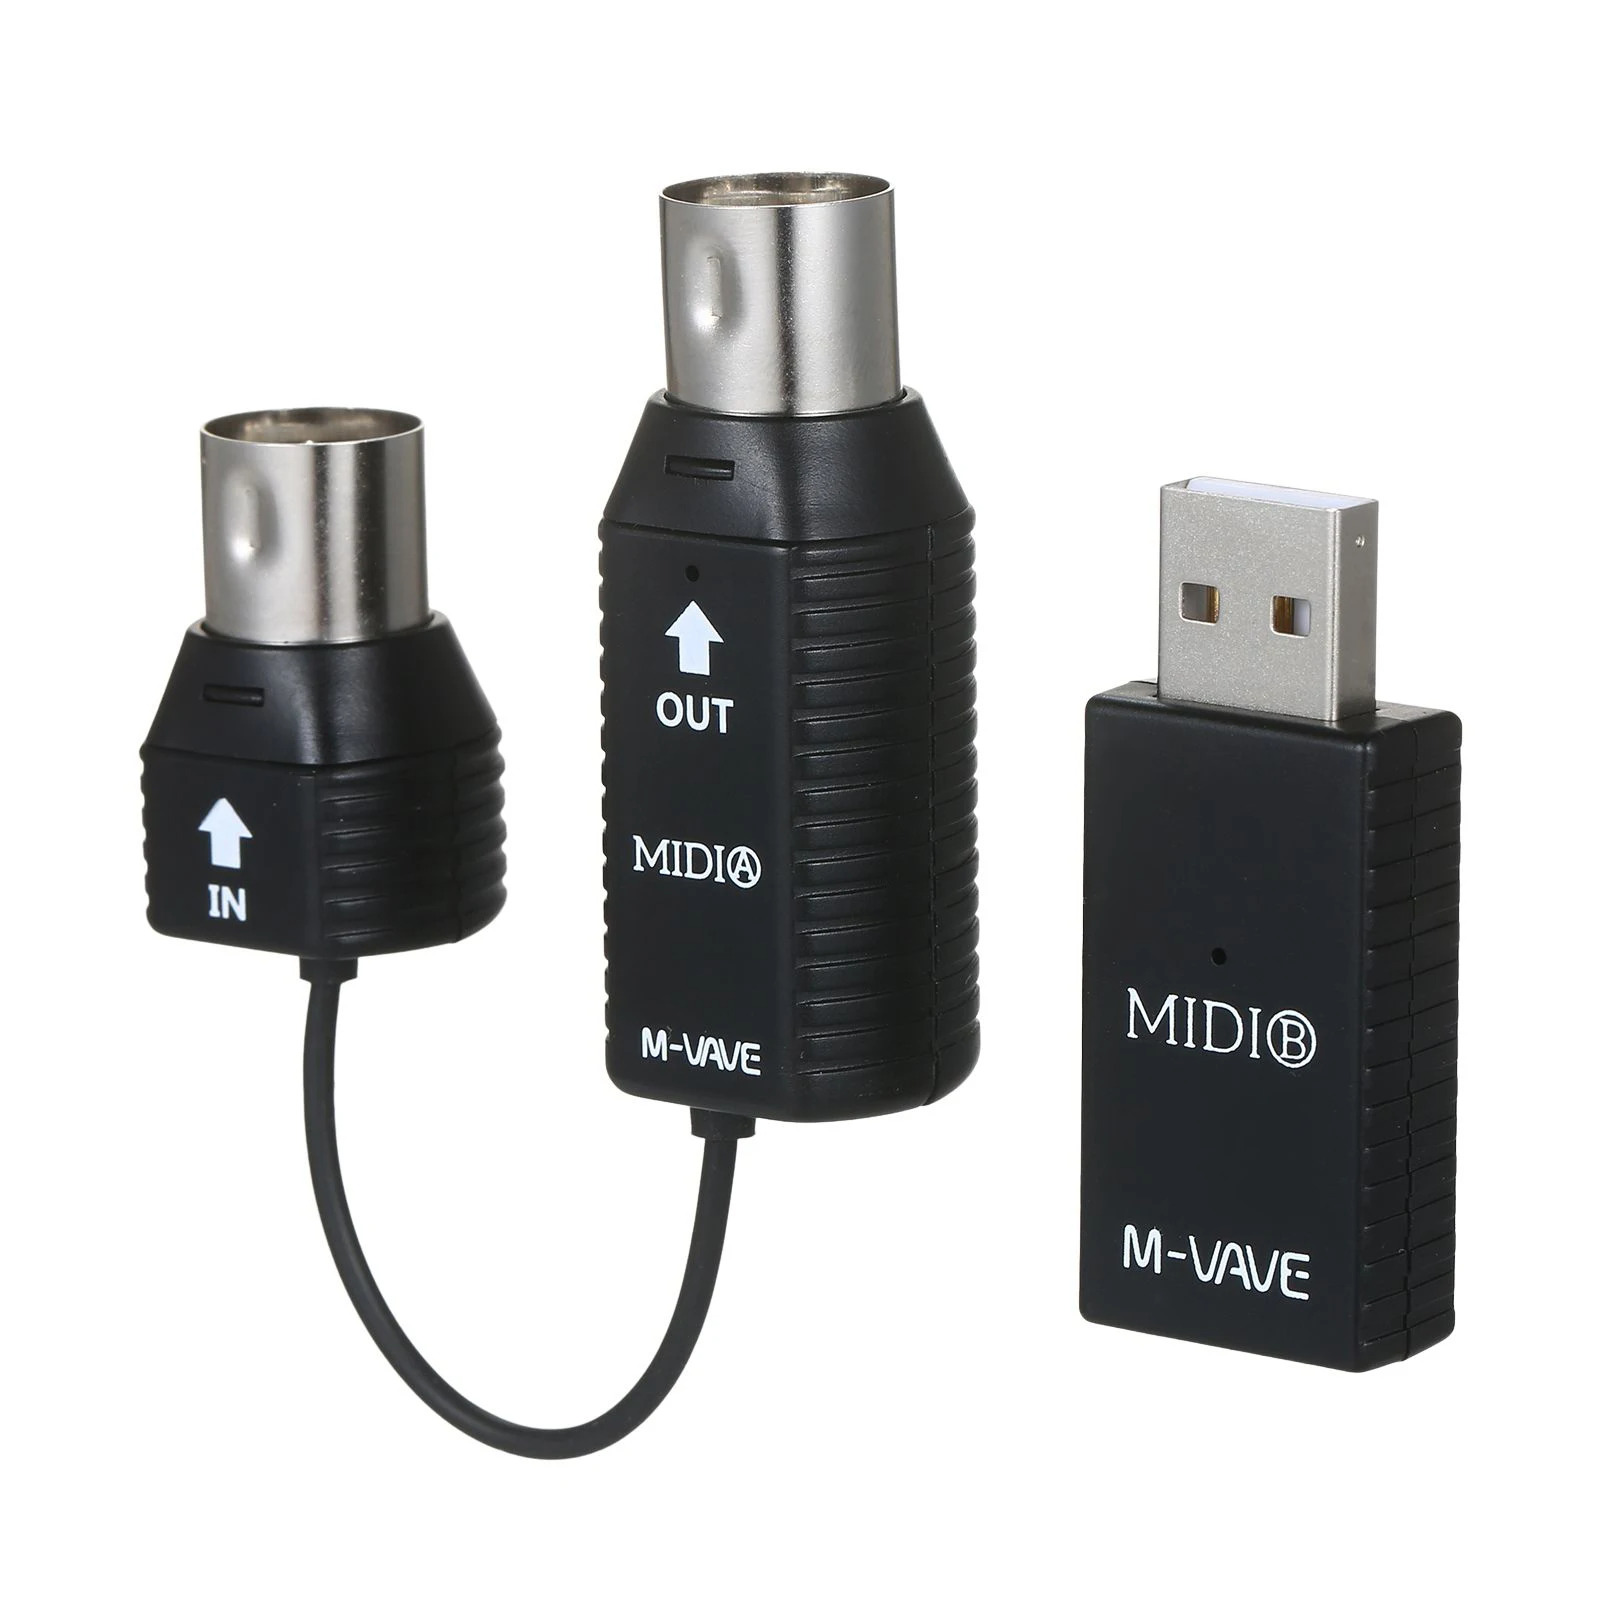 M-vave MS1 midi không dây giao diện hệ thống truyền dẫn không dây mini